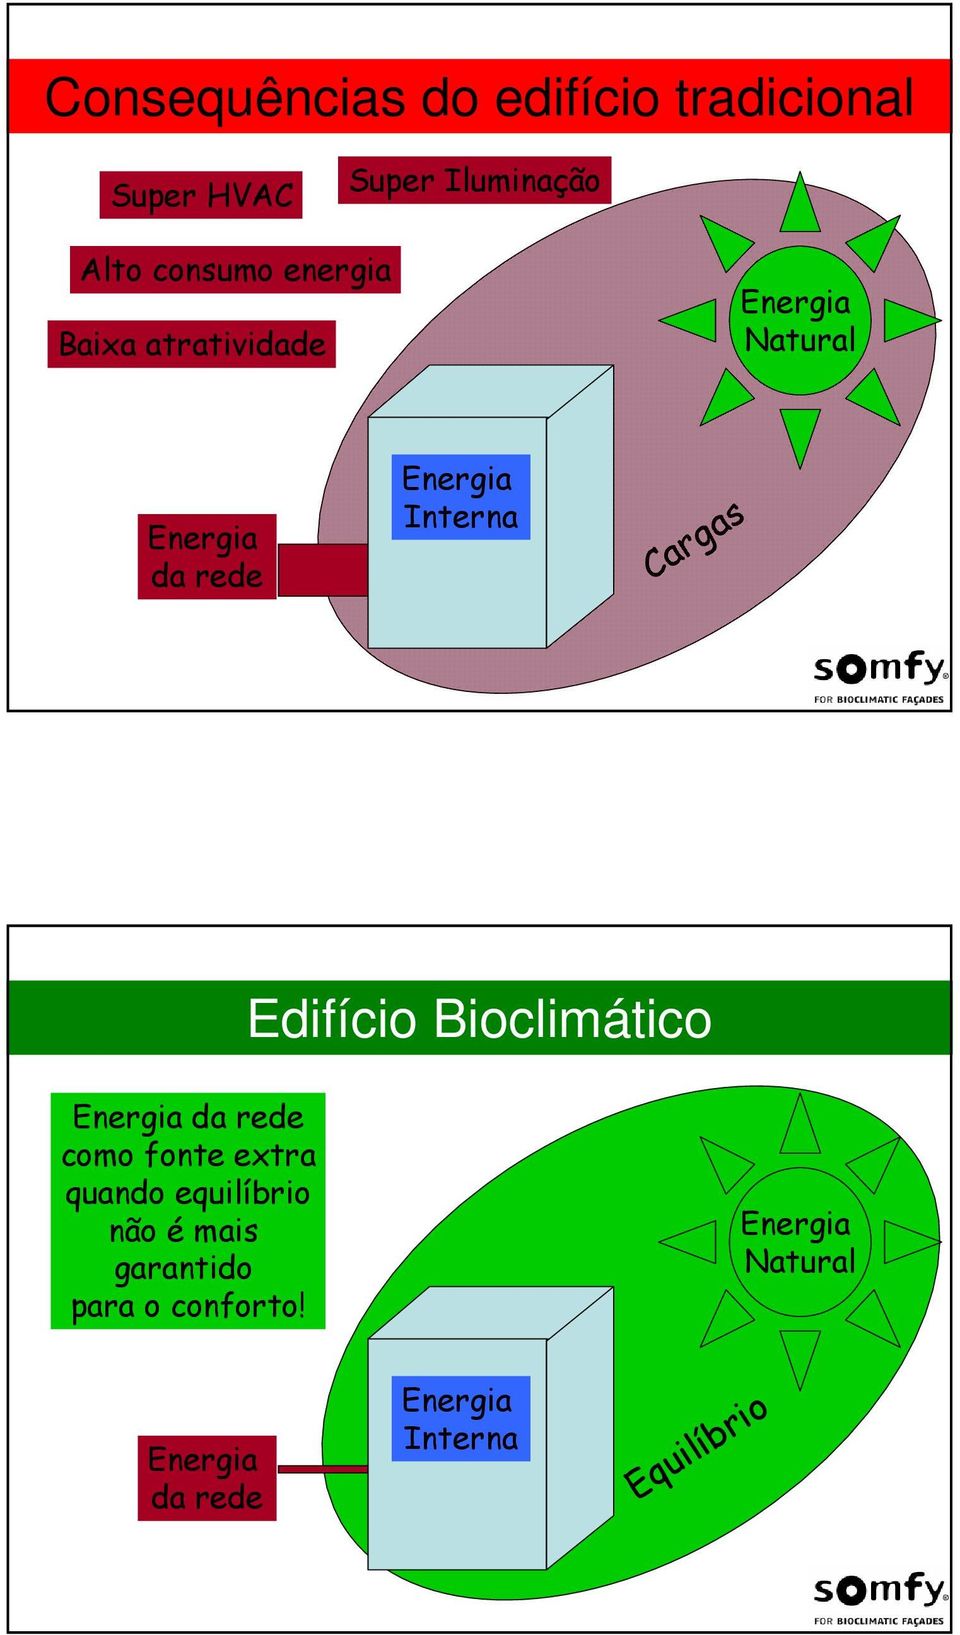 Cargas Edifício Bioclimático da rede como fonte extra quando